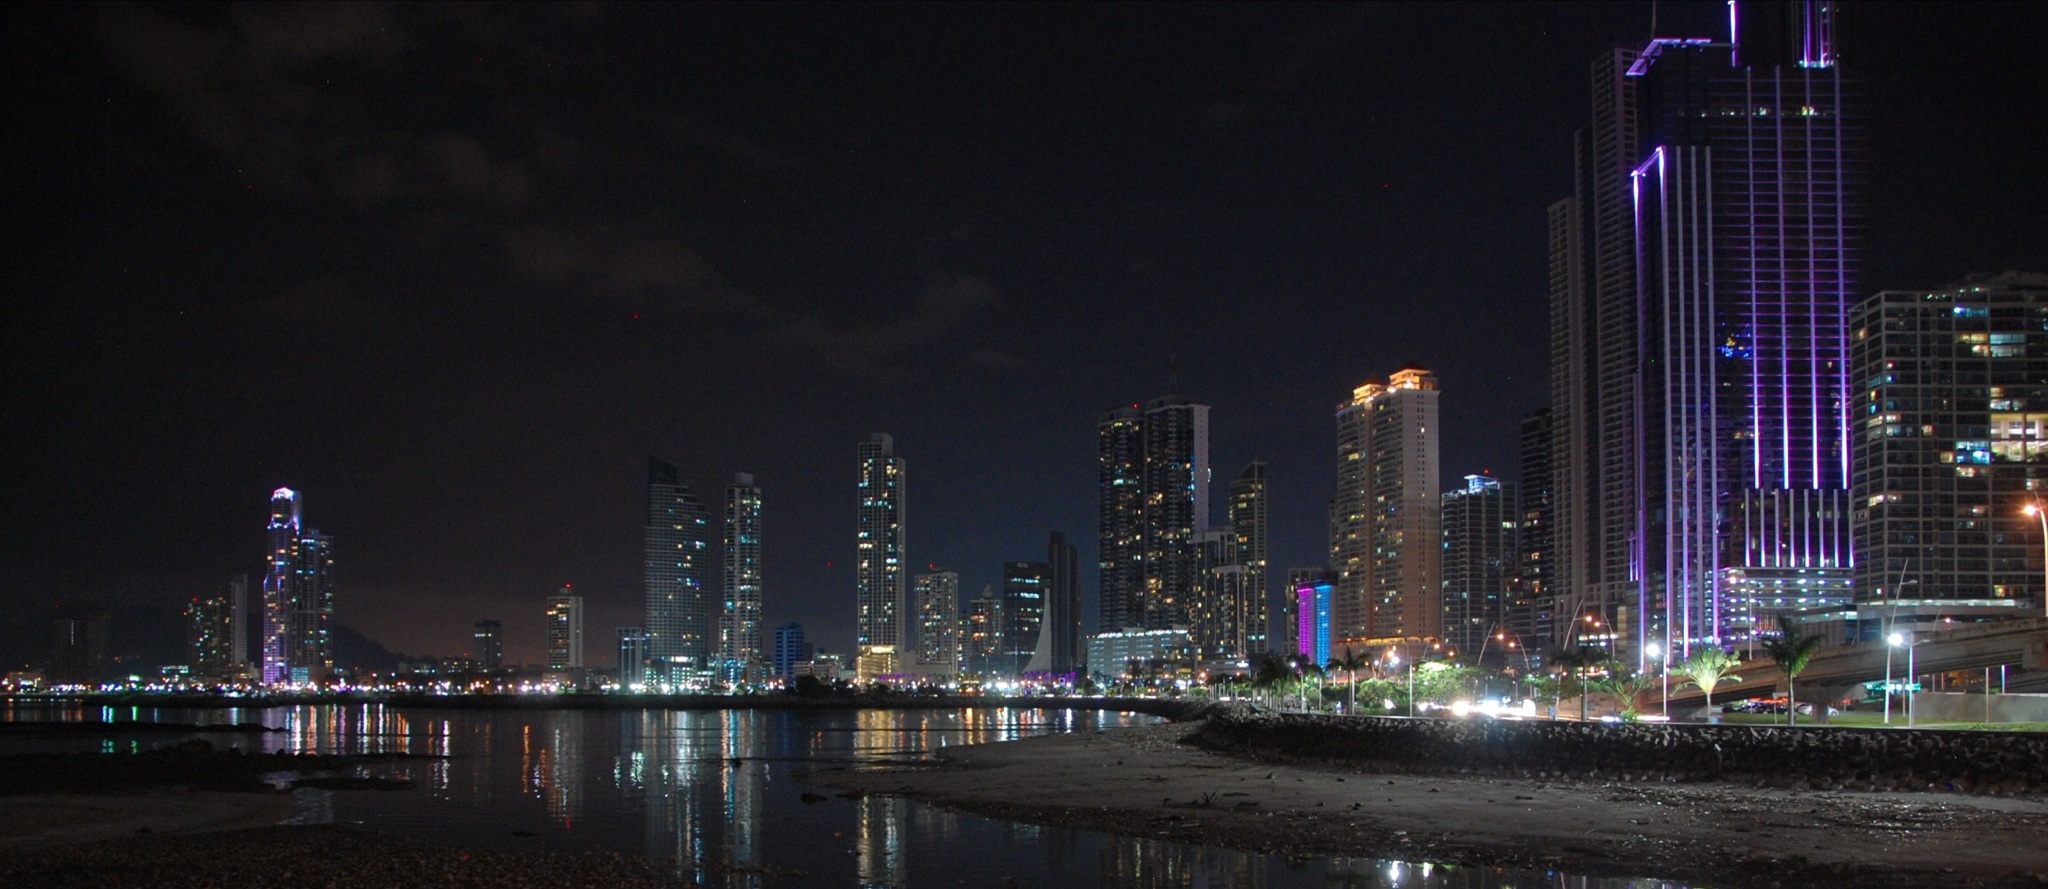 Panamá City, Skyline bei Nacht - Auslandsimmobilien zum Kauf oder zur Miete